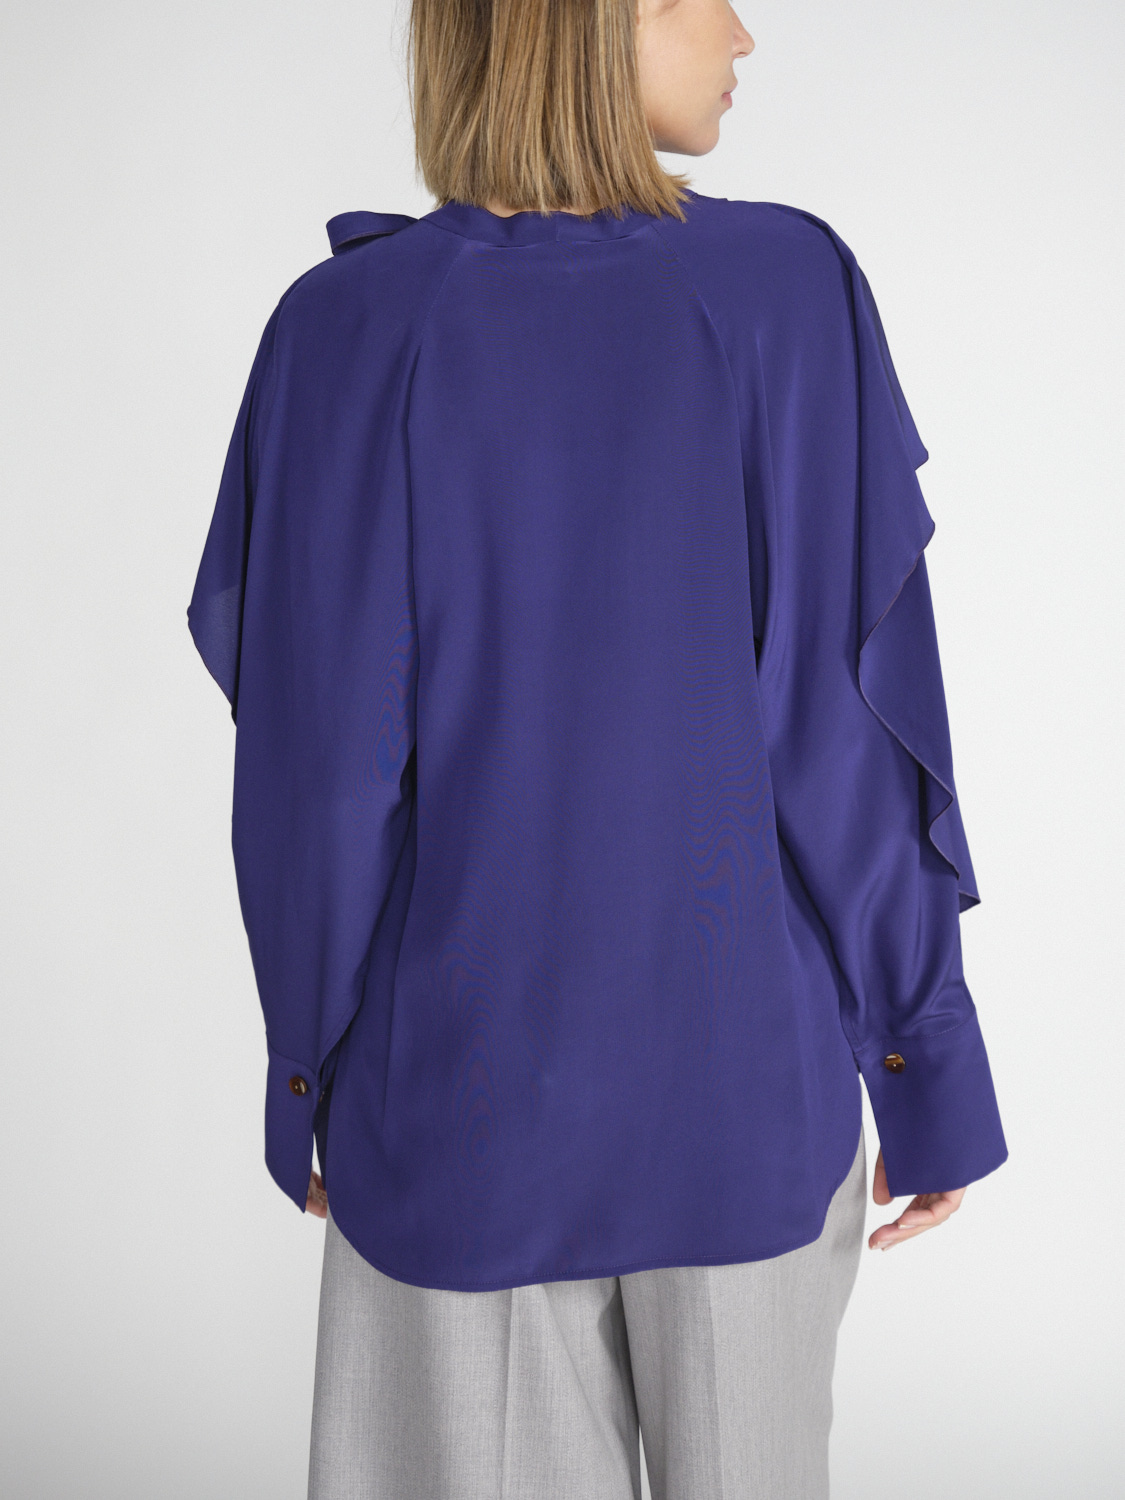 Victoria Beckham Romantic - Crêpe silk blouse with flounce details  purple 36